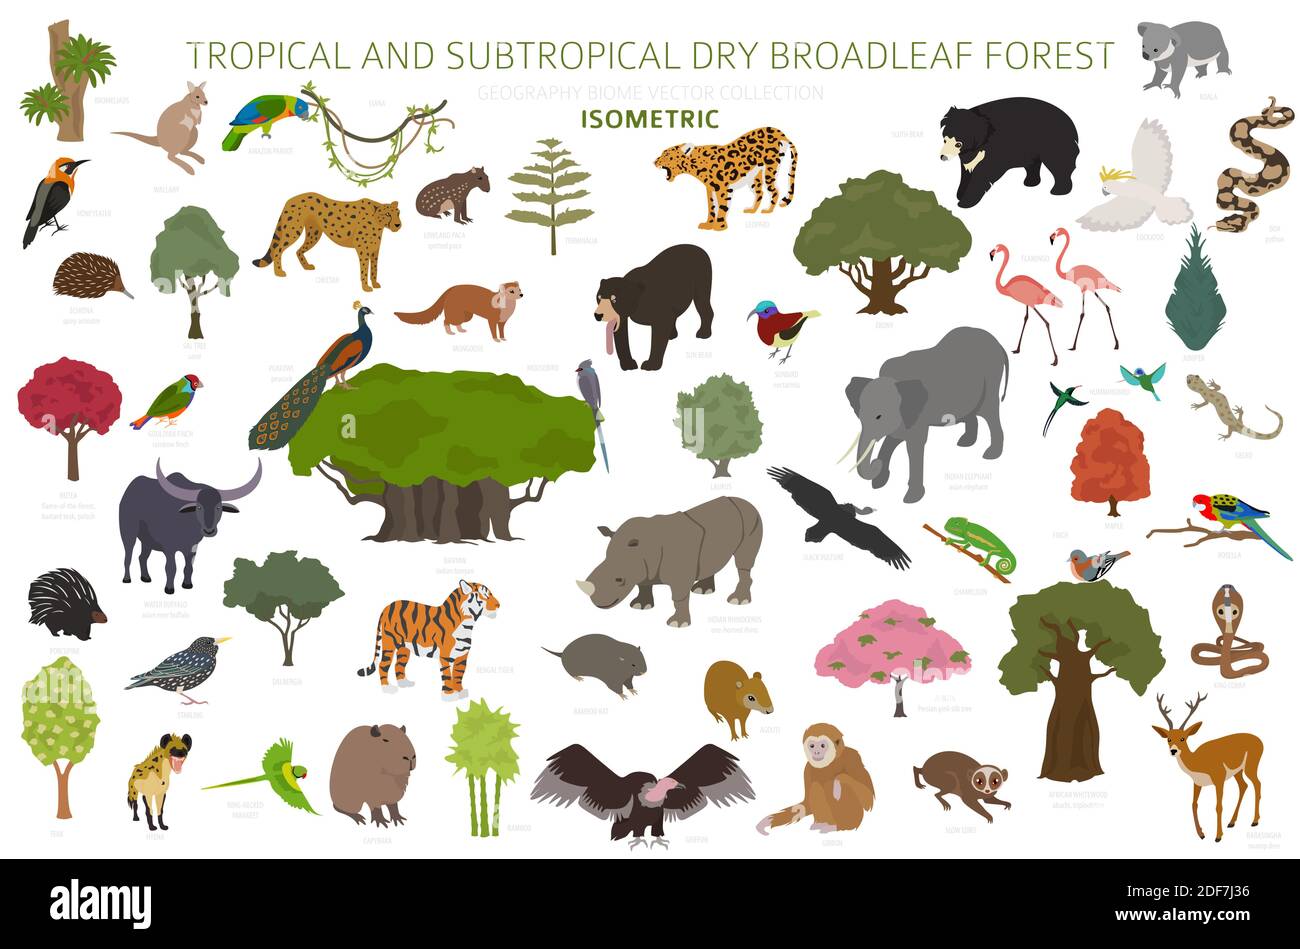 Biome forestier tropical et subtropical à feuilles larges, infographie sur la région naturelle. Forêts saisonnières. Écosystème des animaux, des oiseaux et des végétations isométrique Illustration de Vecteur